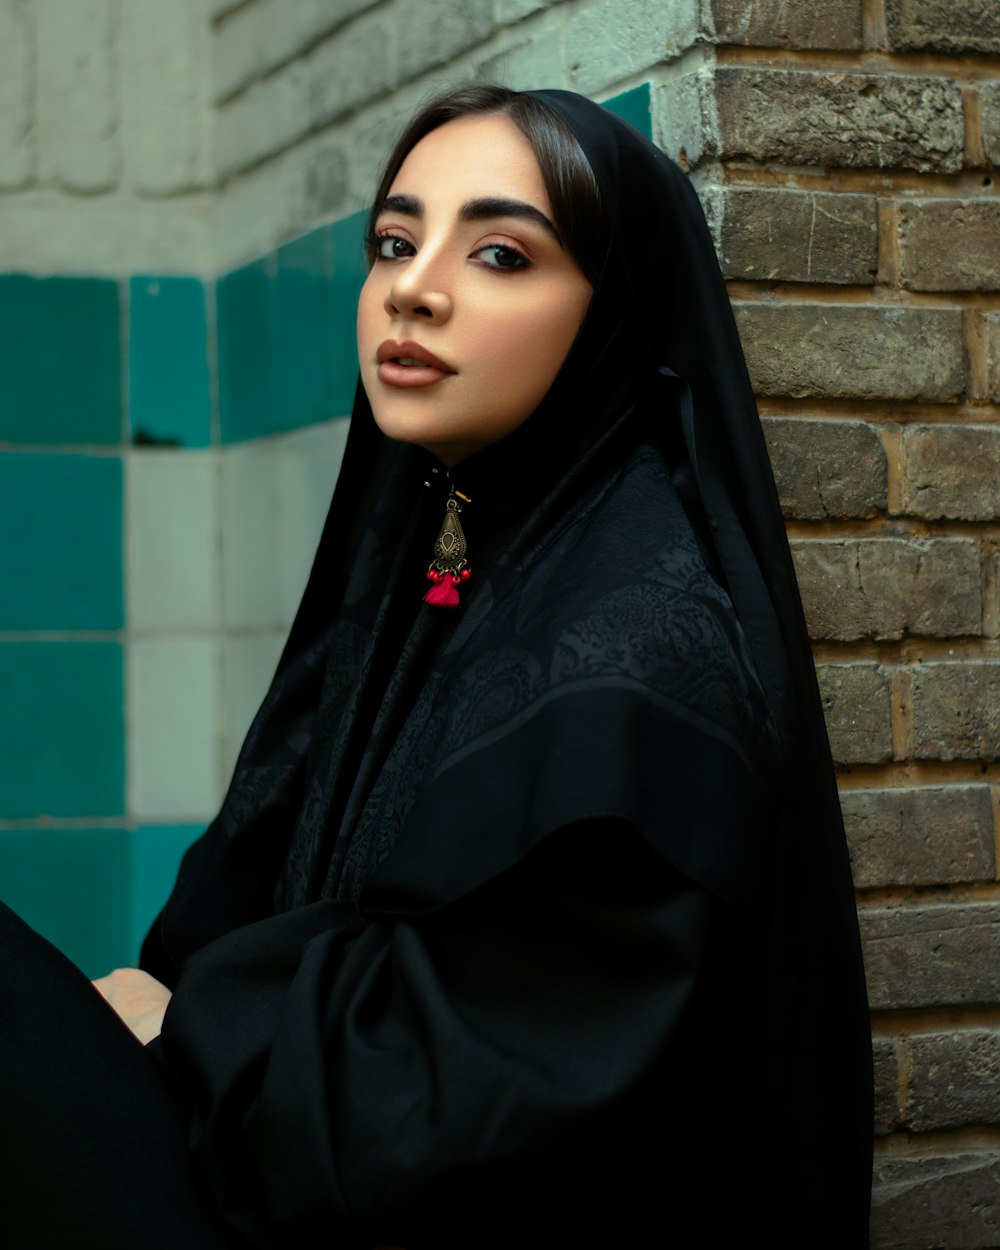 mulher no hijab preto e vestido preto de manga comprida